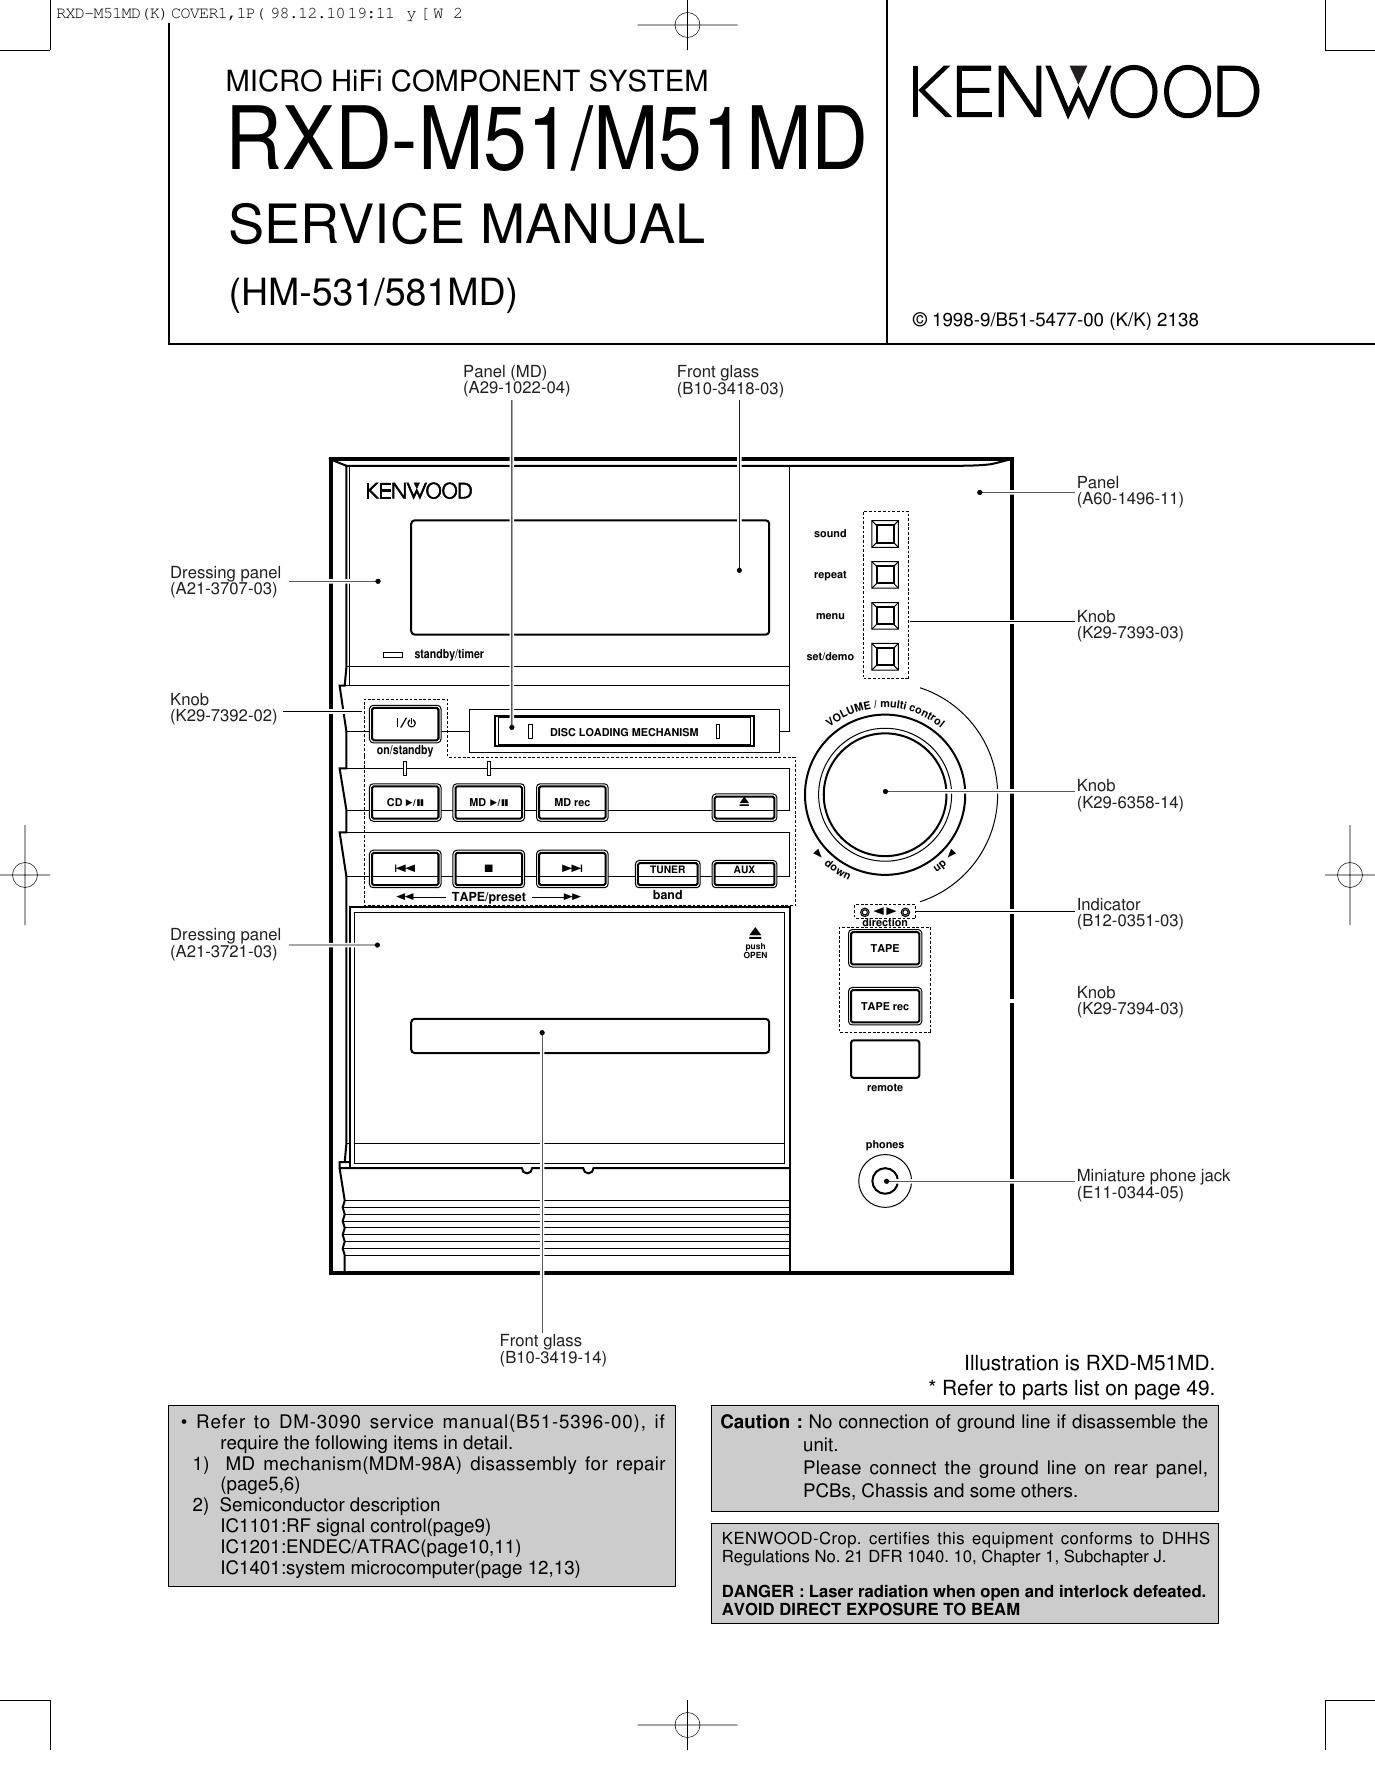 Kenwood HM 531 Service Manual